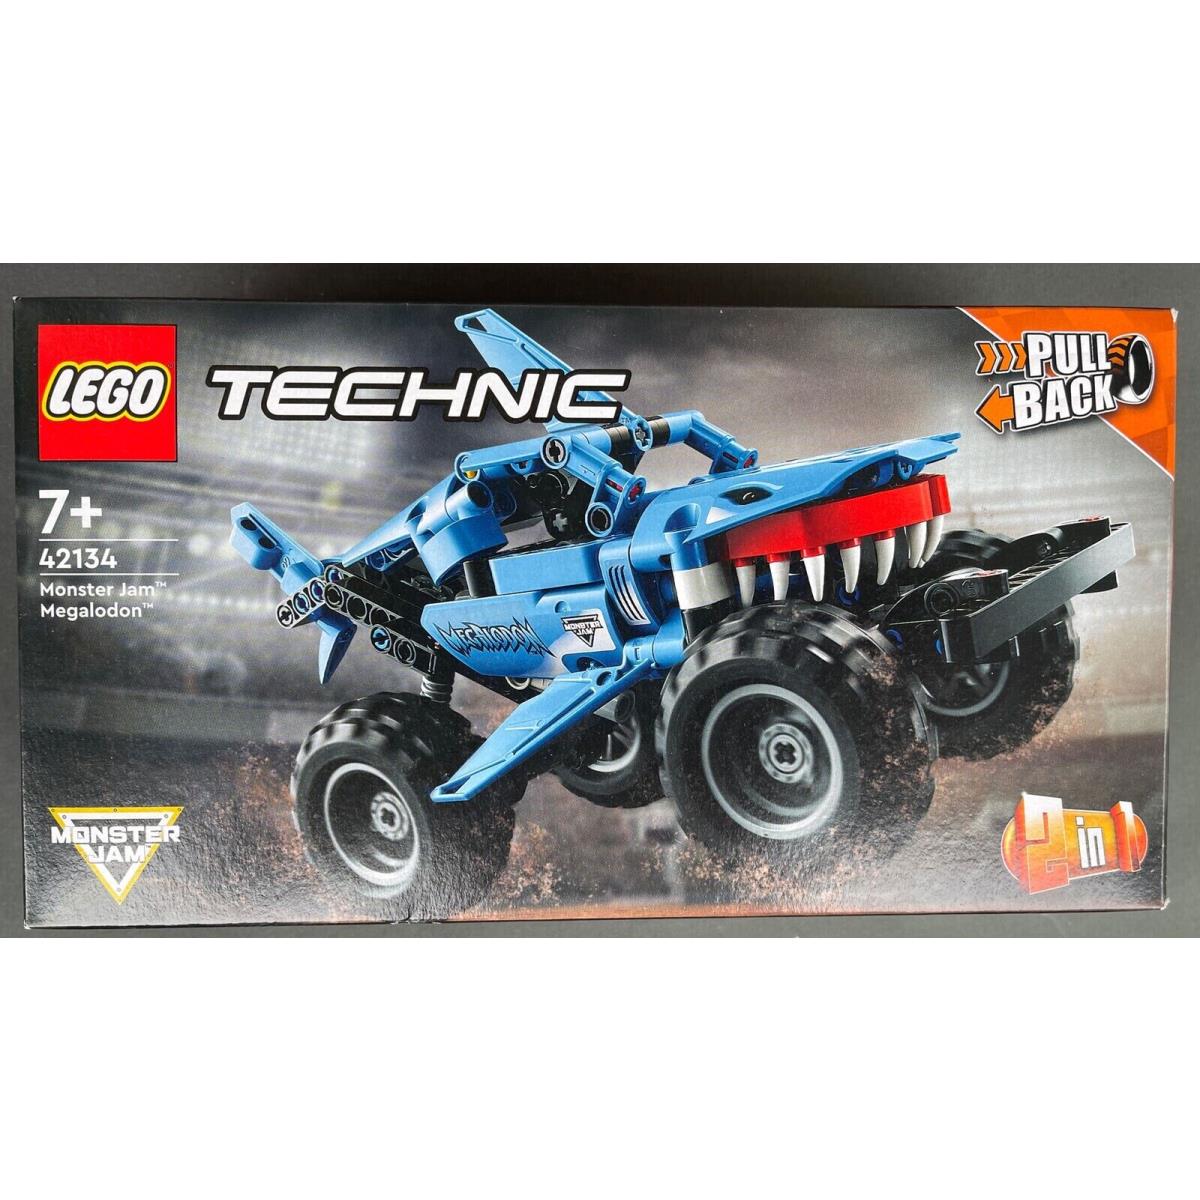 Lego Technic: Monster Jam Megalodon 42134